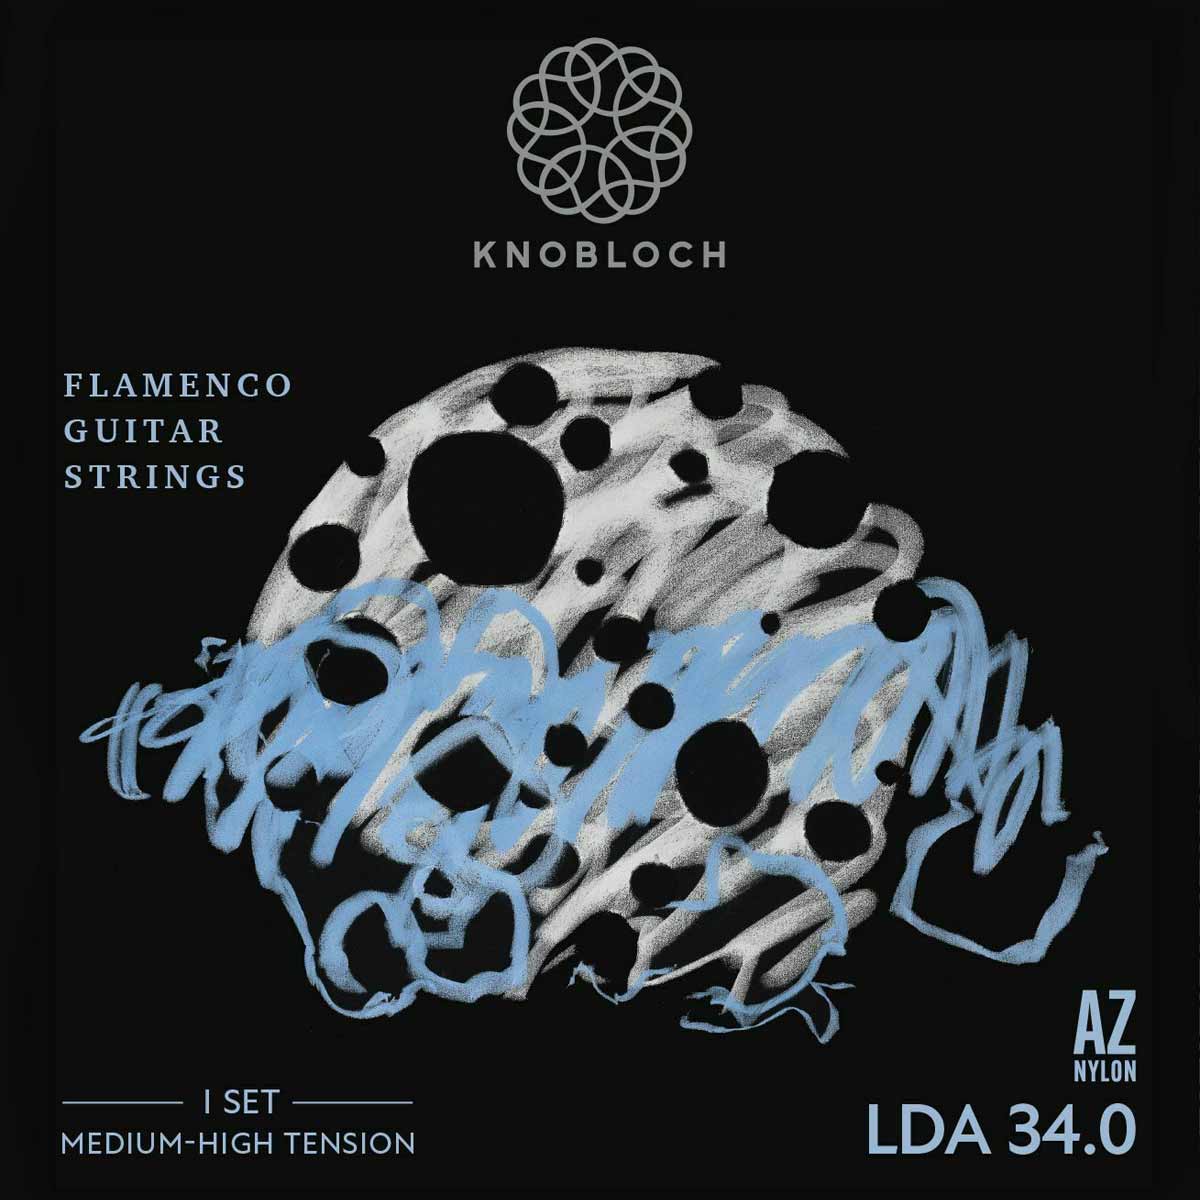 Compra las nuevas cuerdas Luna Flamenca de Knobloch en Prieto Musica